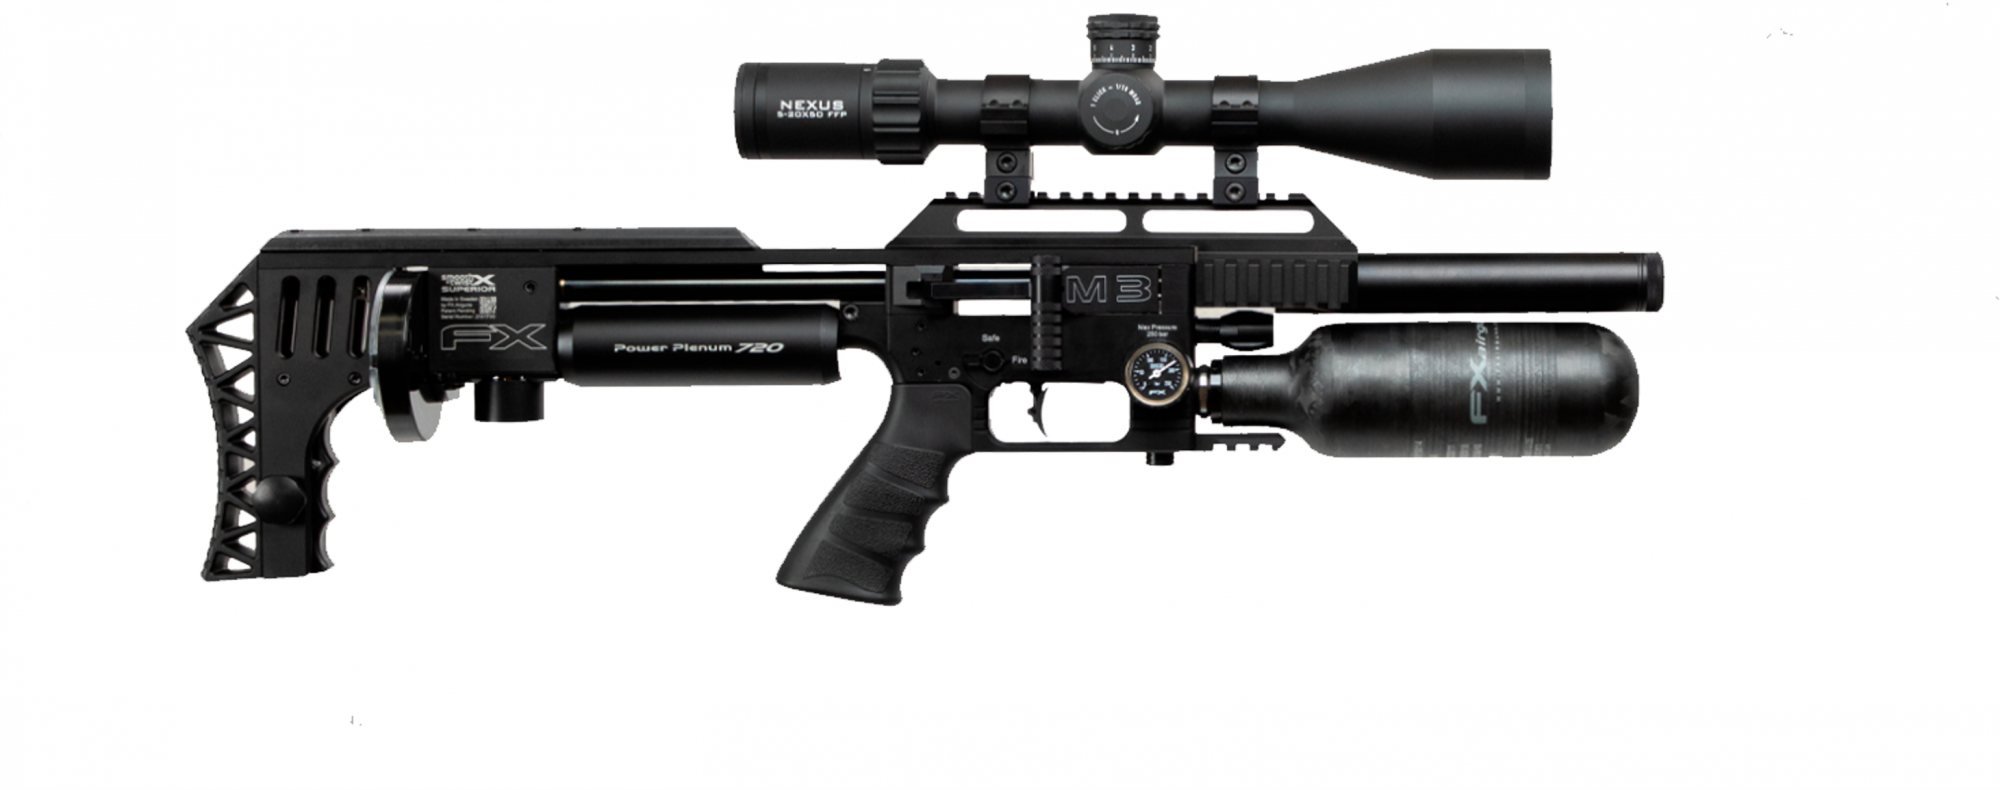 Fx Airguns Fx Impact M3 Black Compact Pcp Air Rifle Rifleman Firearms 7127